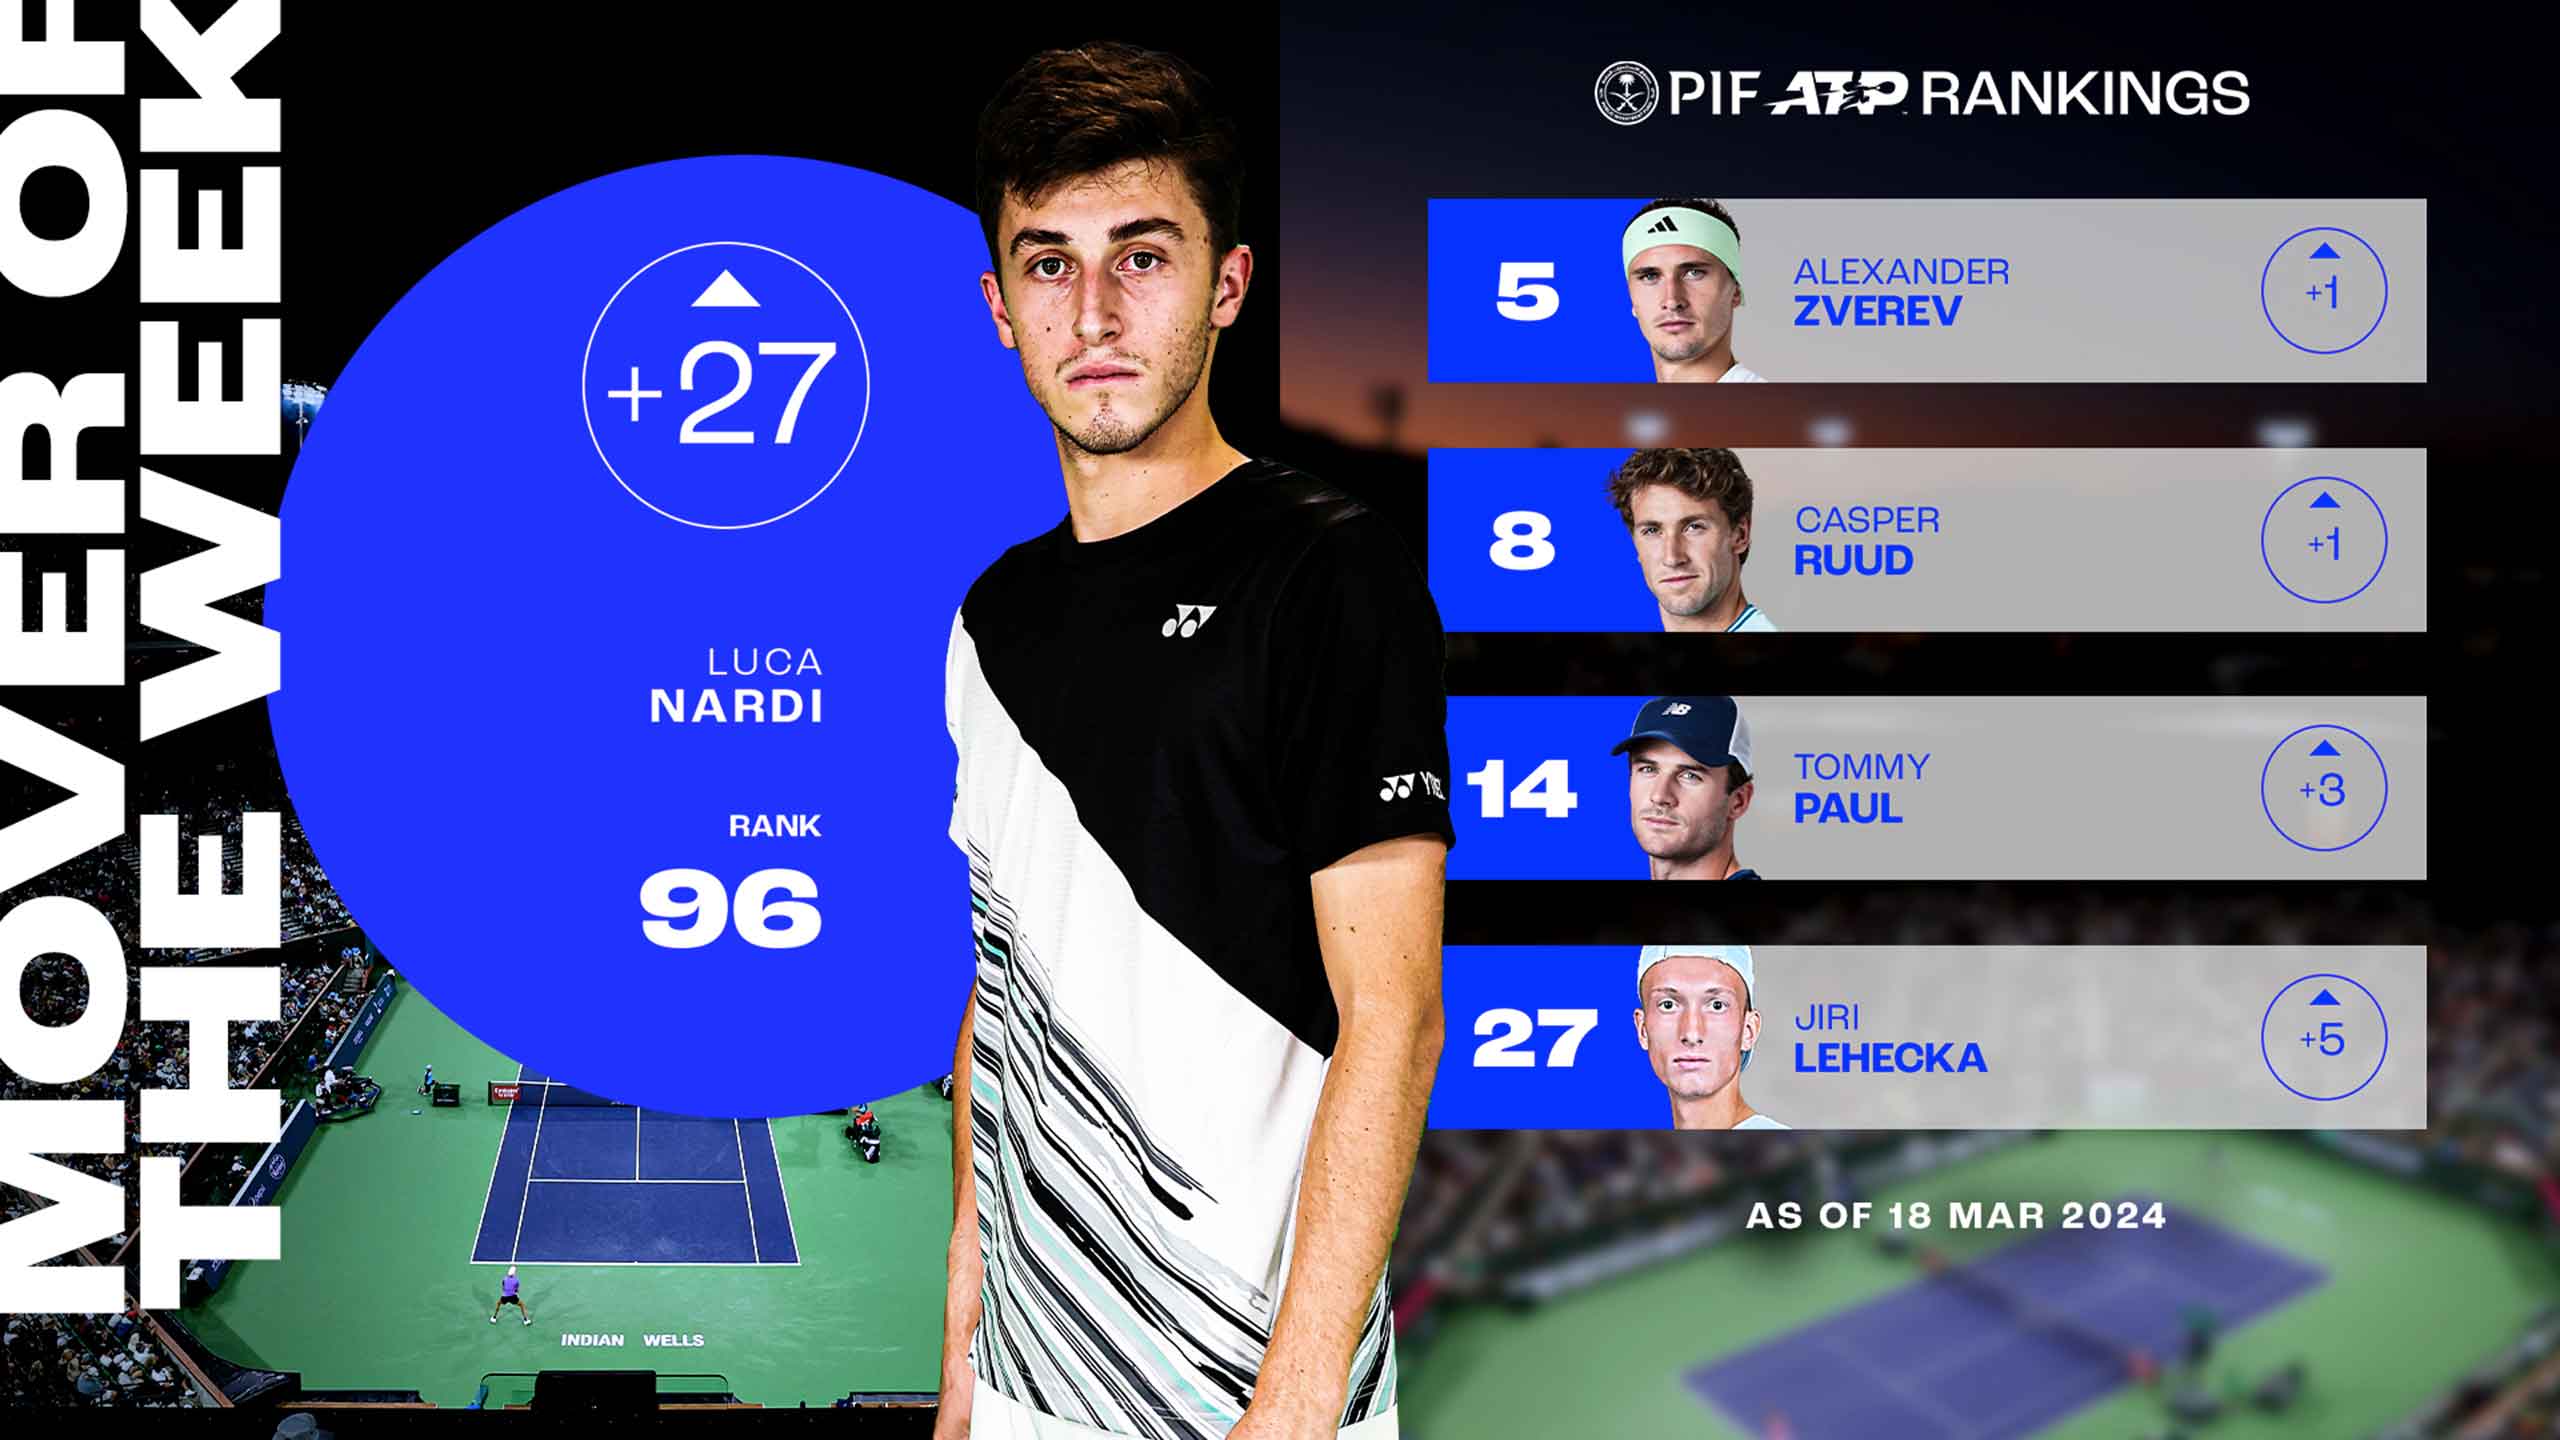 Nardi breaks the Top 100 following Djokovic win, Mover of Week